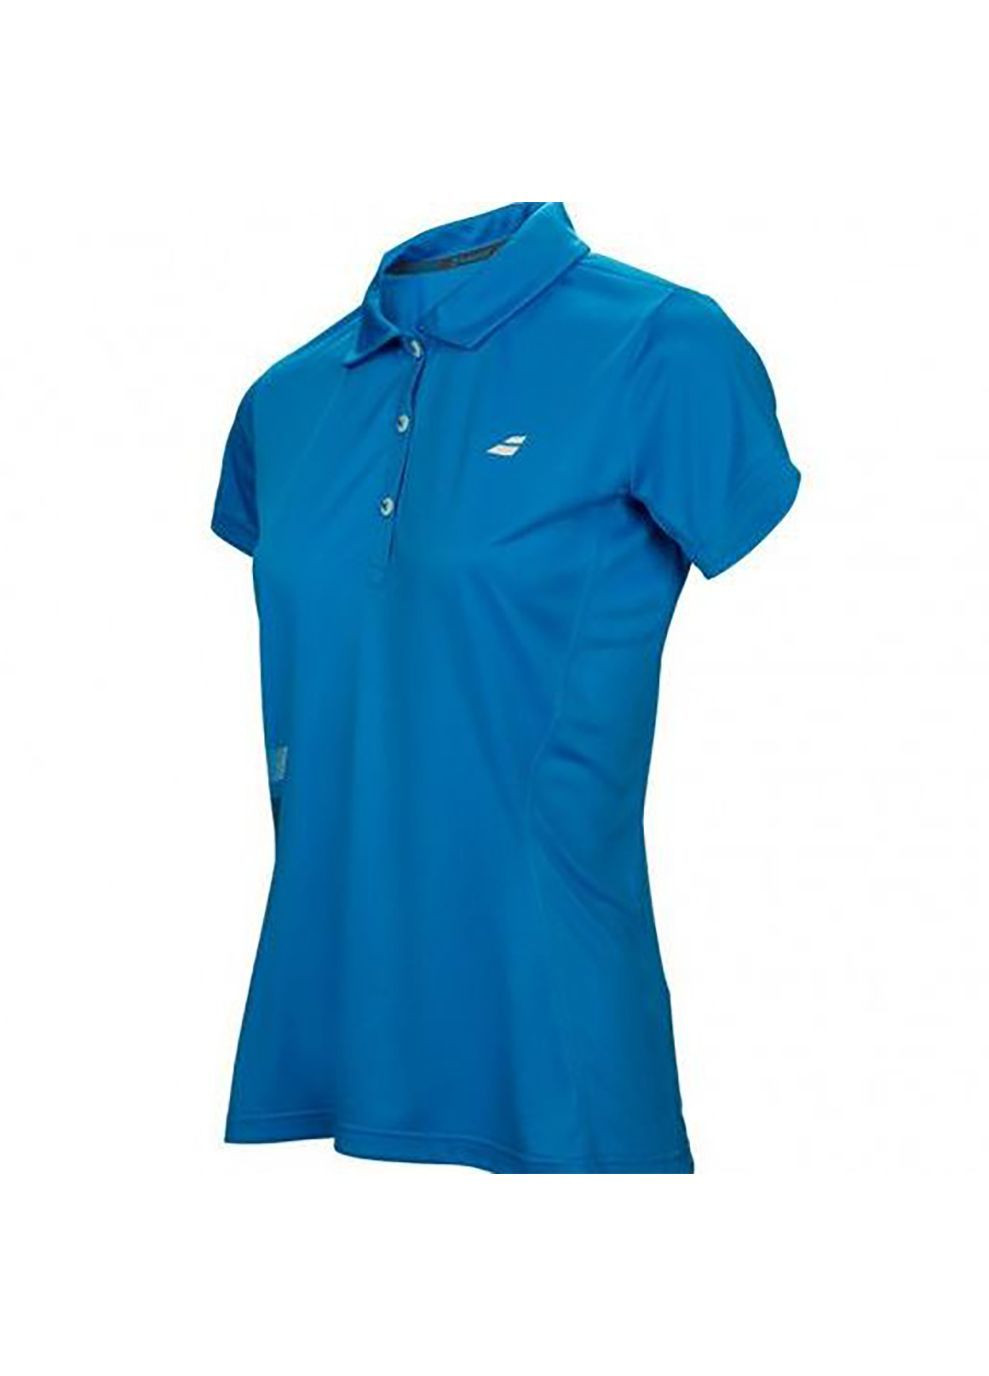 Синяя женская футболка-поло женское core club polo diva blue Babolat однотонная